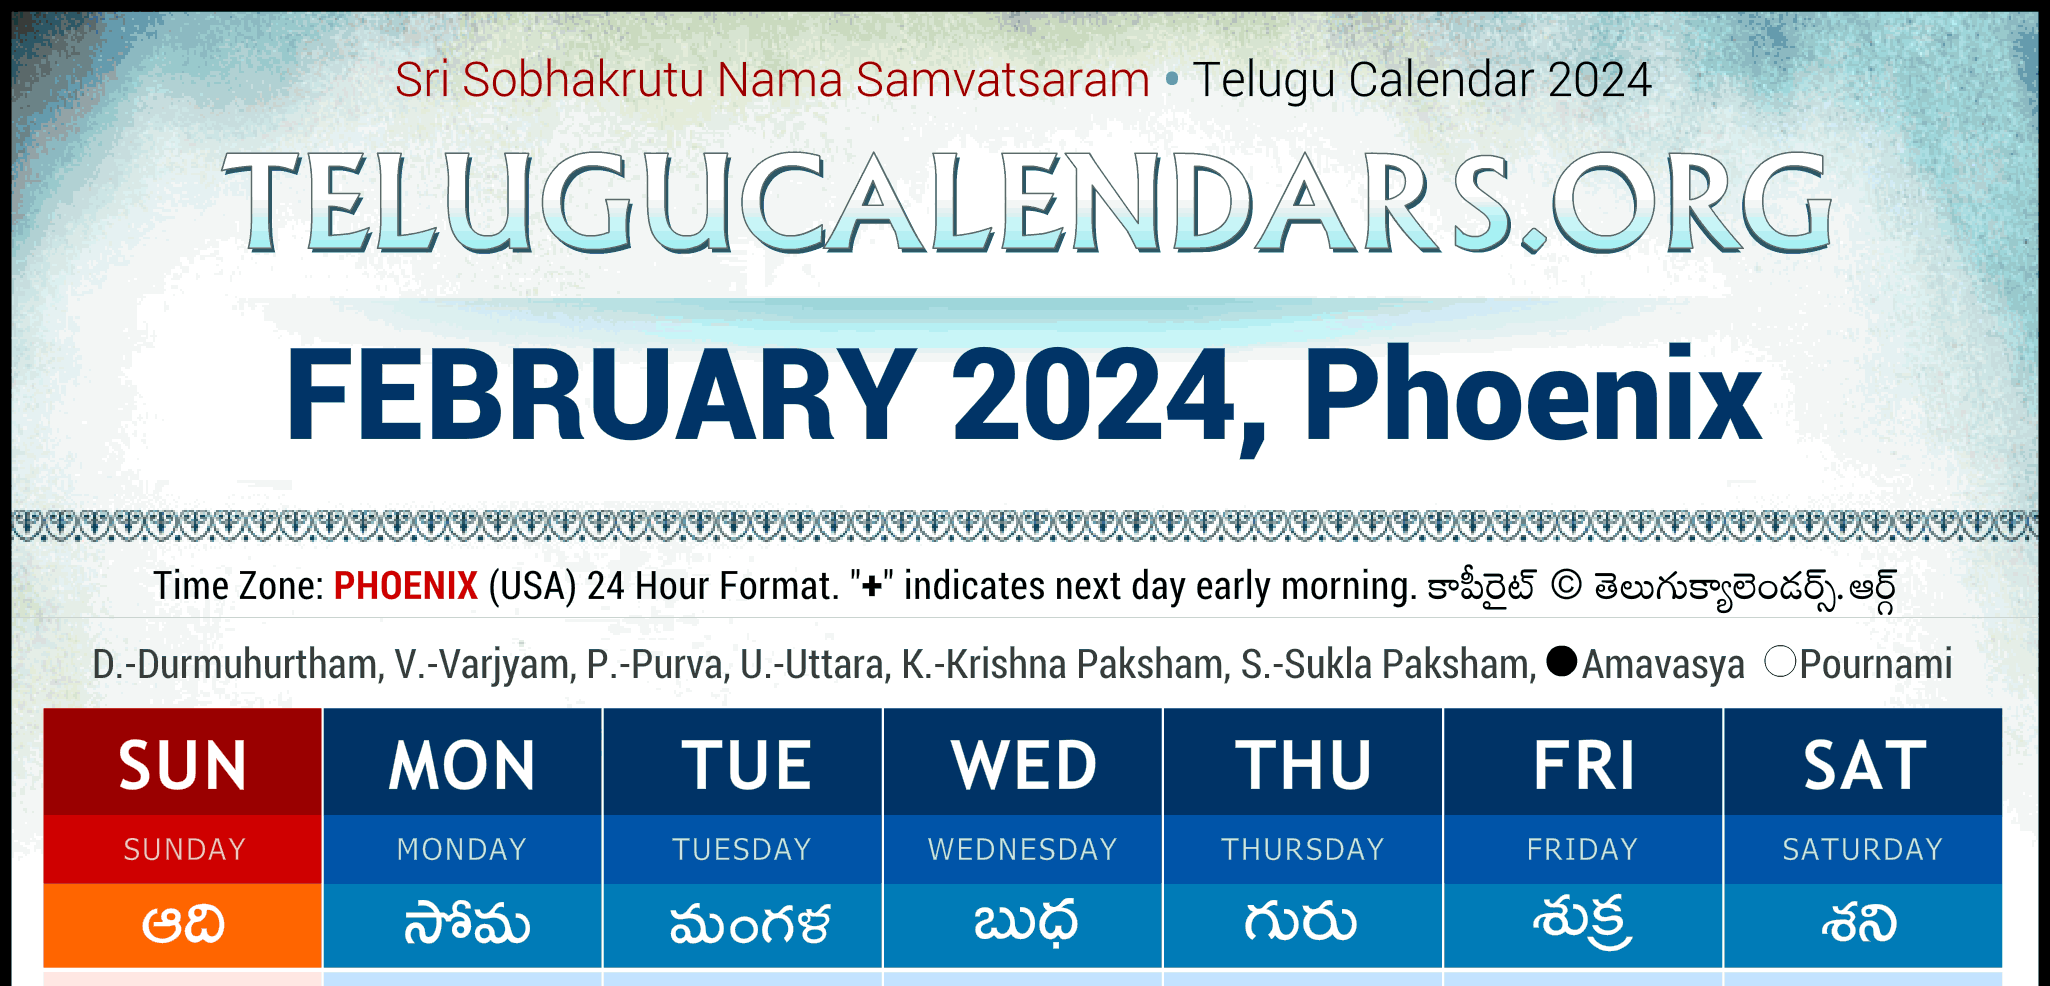 Telugu Calendars 2024 Telugu Panchangam May 17, 2024 Festivals Telugu